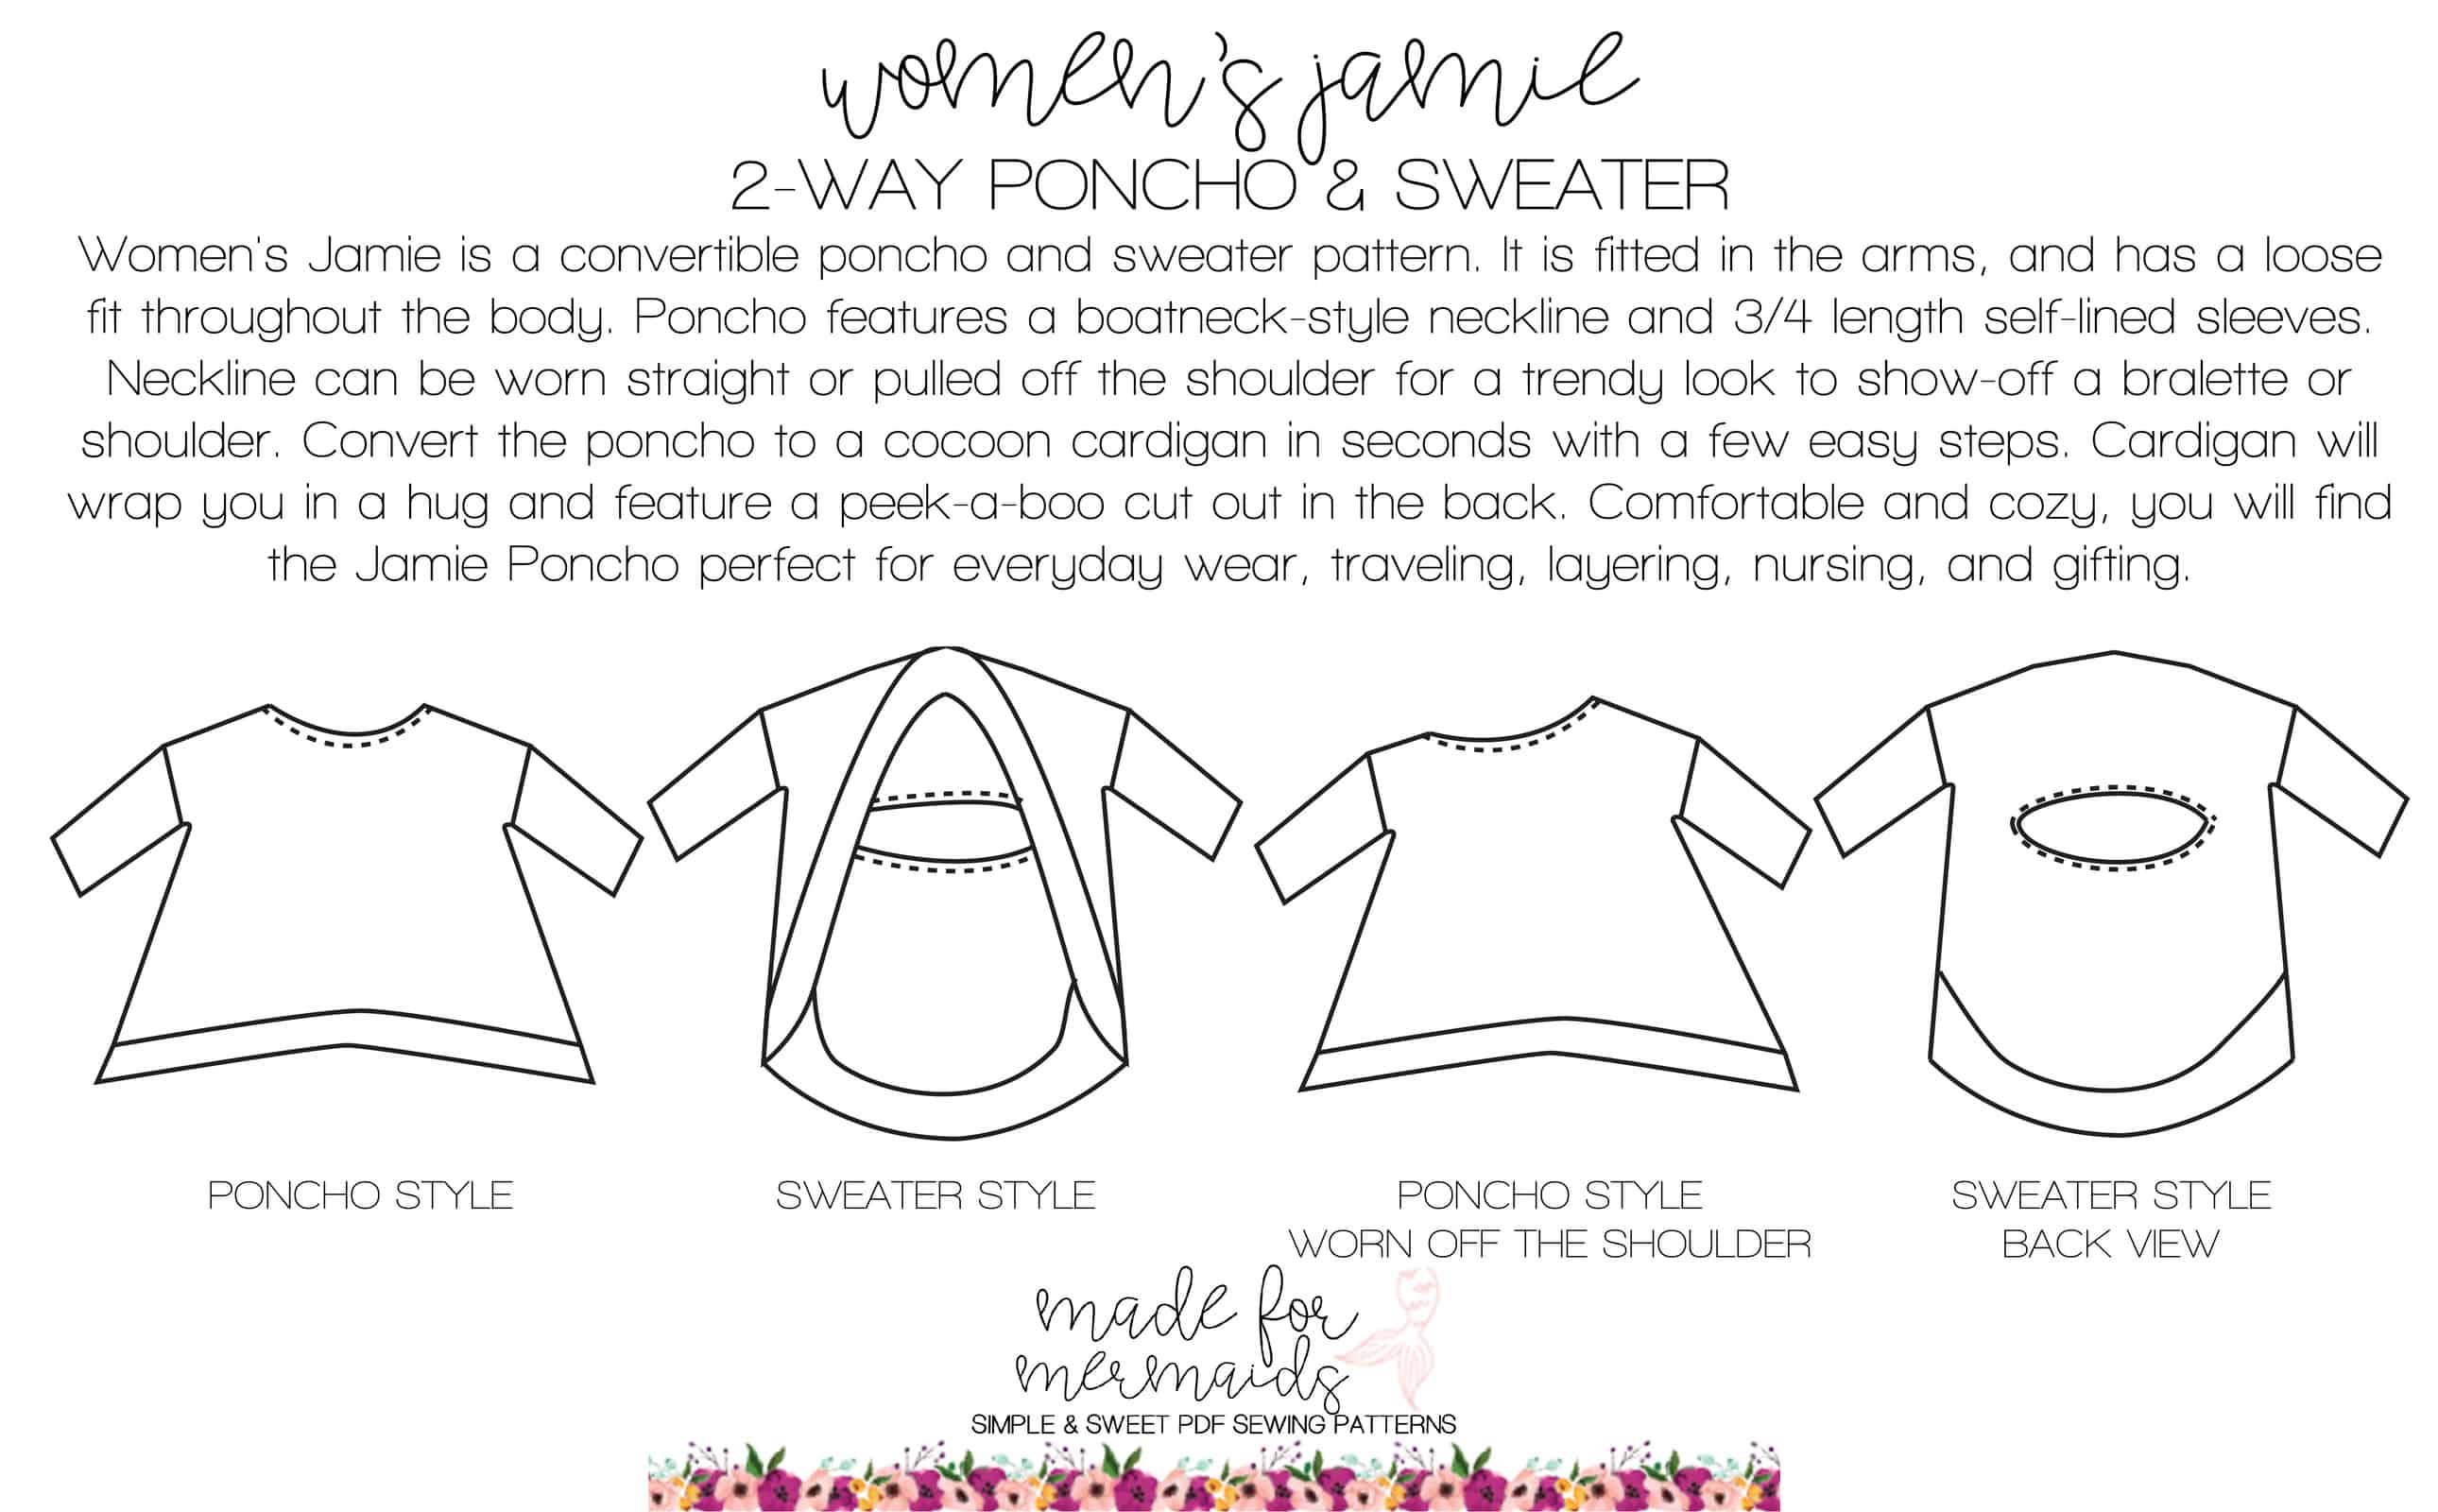 Women's Jamie 2-Way Poncho & Sweater